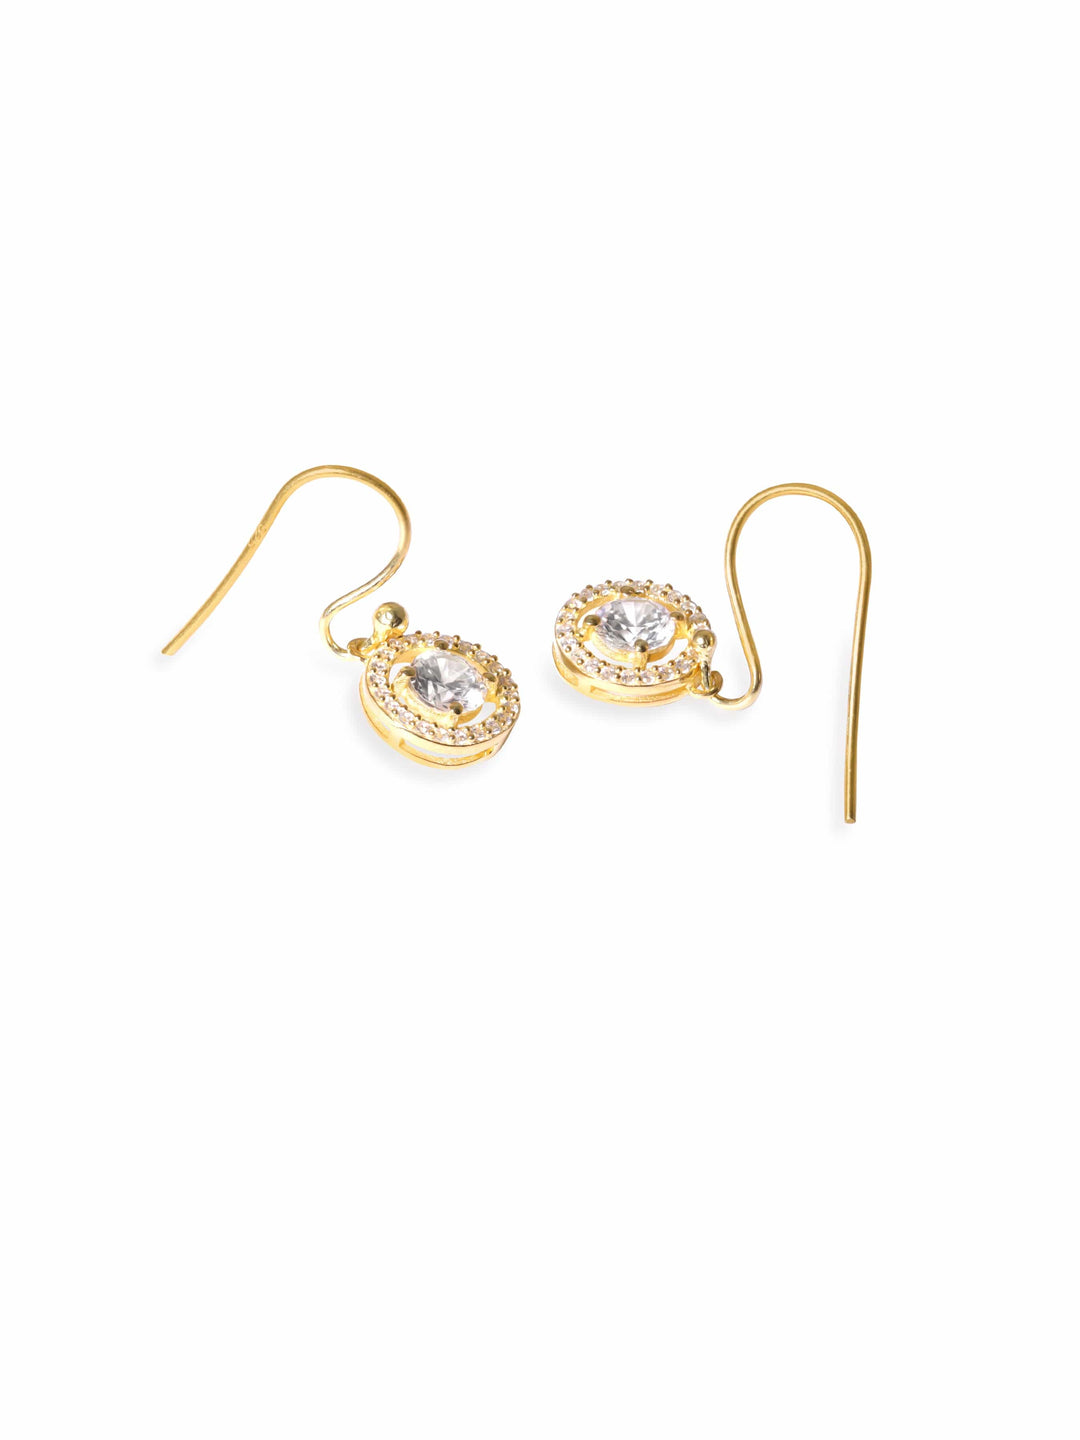 Rubans Silver Gold-Plated Zircon Classic Studs Earrings Earrings